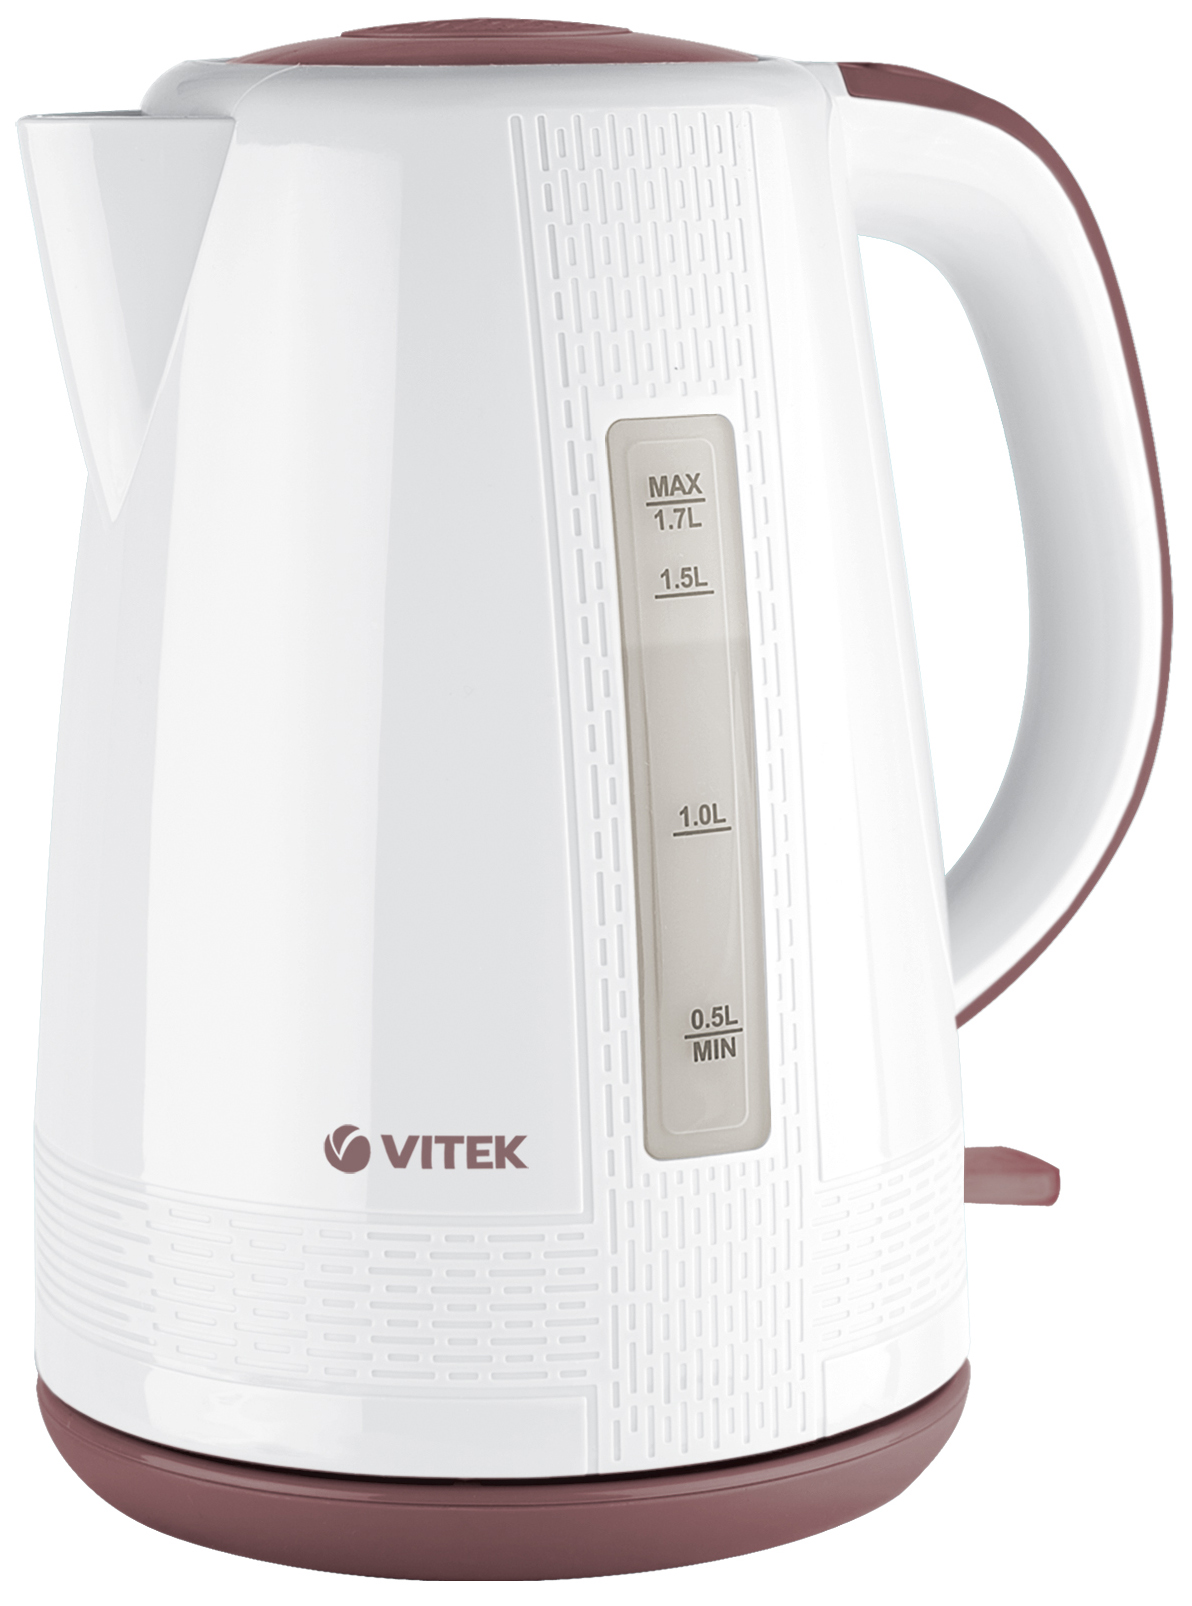 Чайник электрический VITEK VT-7055 1.7 л белый, коричневый фен vitek vt 2298 bn 2 400 вт коричневый